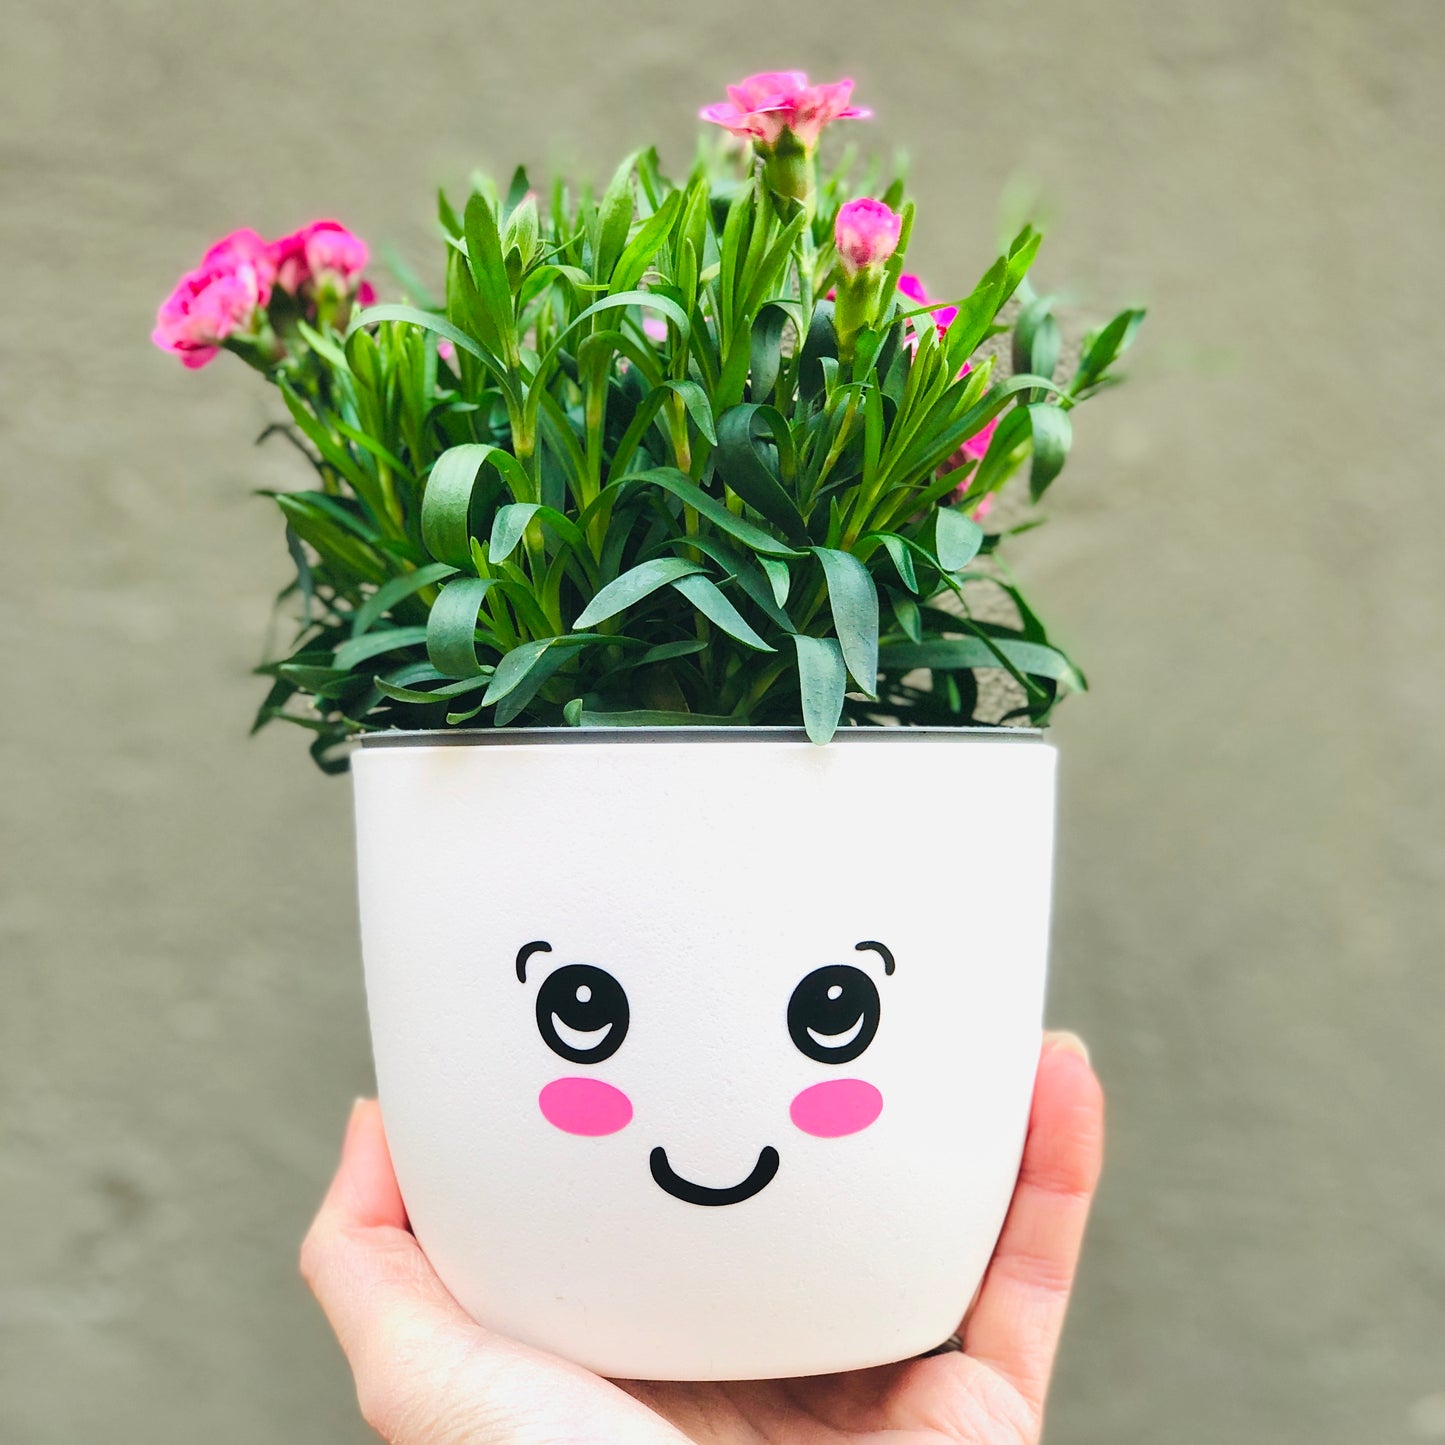 Aufkleber Gesicht - fröhlicher Sticker für Blumentopf - süßes Gesicht - Gesichtstopf - Geschenk Mama Freundin Kind - DIY Sticker personalisiert